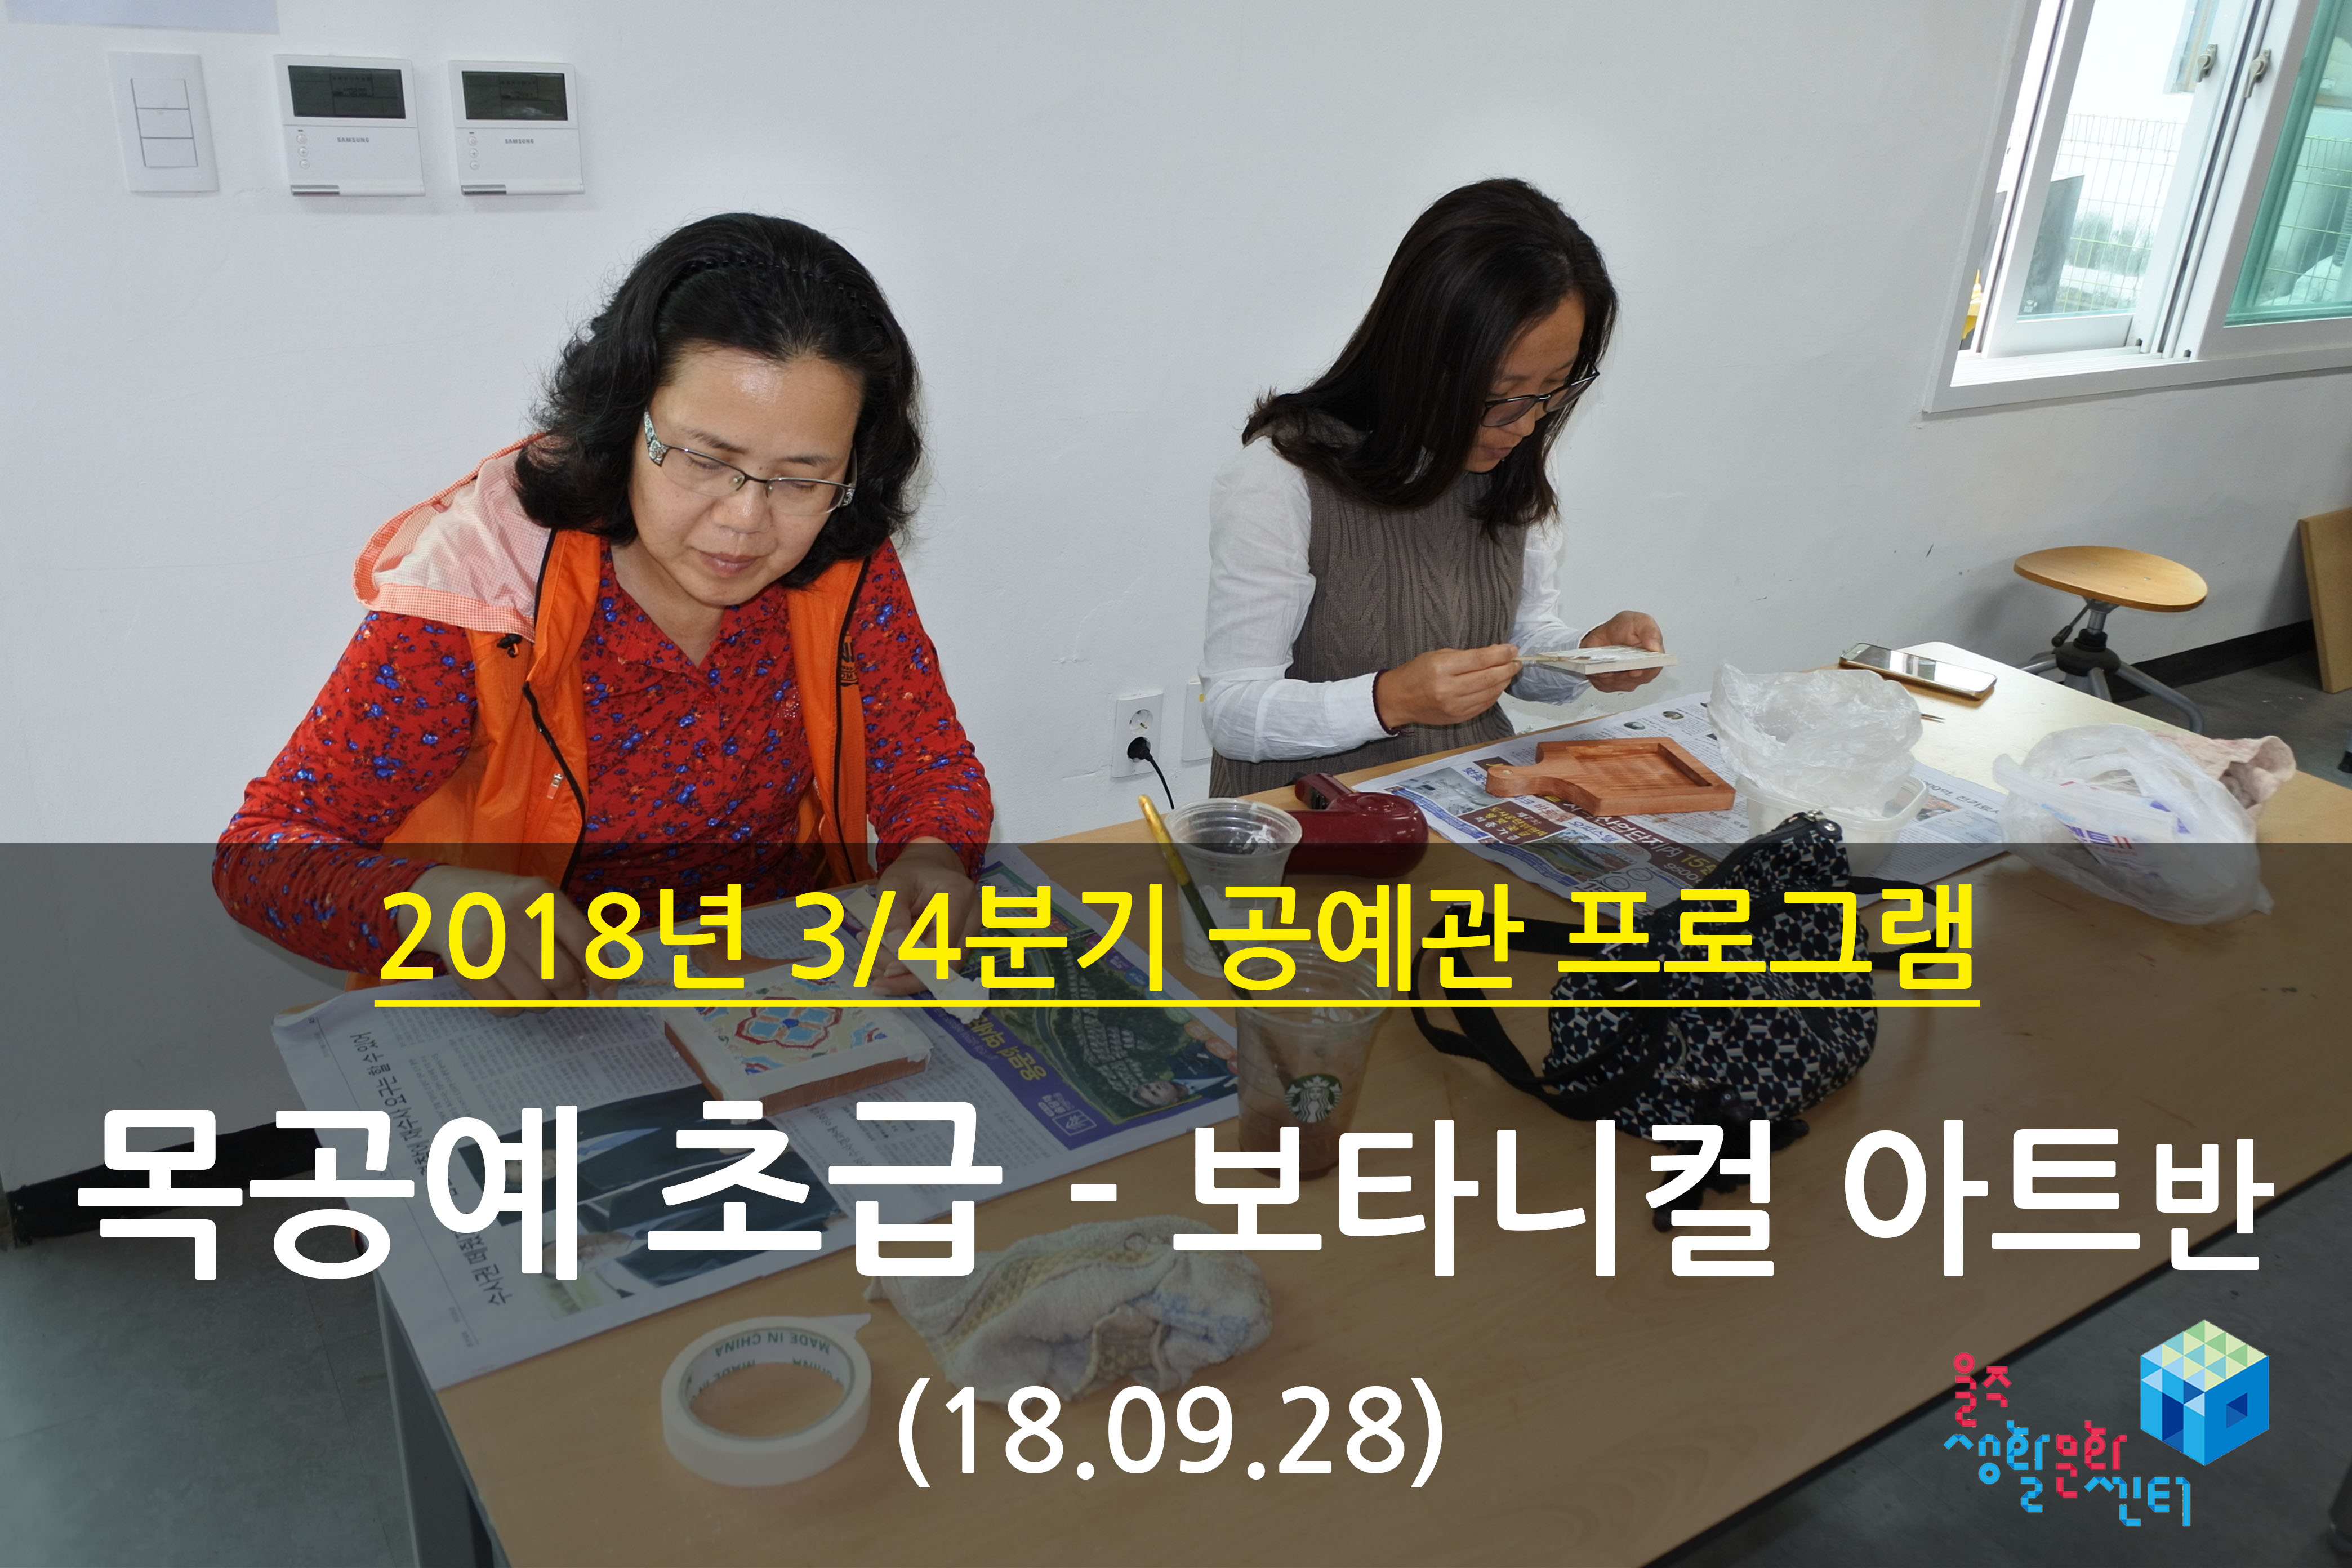 2018.09.28 _ 목공예 초급 - 보타니컬 아트반 _ 3/4분기 12주차 수업